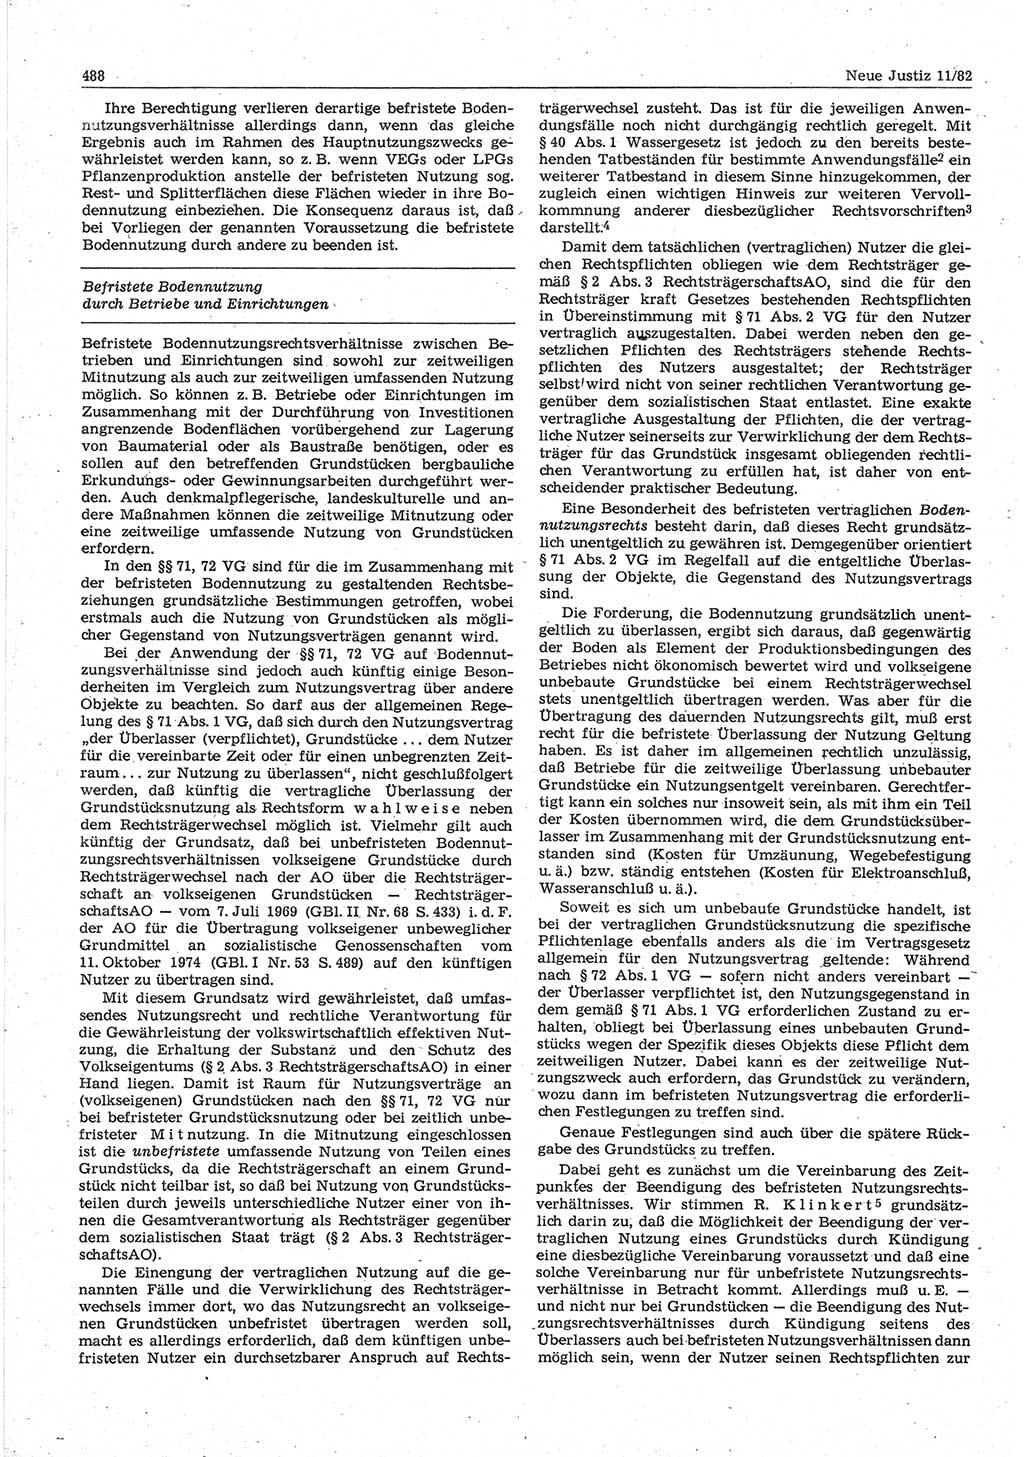 Neue Justiz (NJ), Zeitschrift für sozialistisches Recht und Gesetzlichkeit [Deutsche Demokratische Republik (DDR)], 36. Jahrgang 1982, Seite 488 (NJ DDR 1982, S. 488)